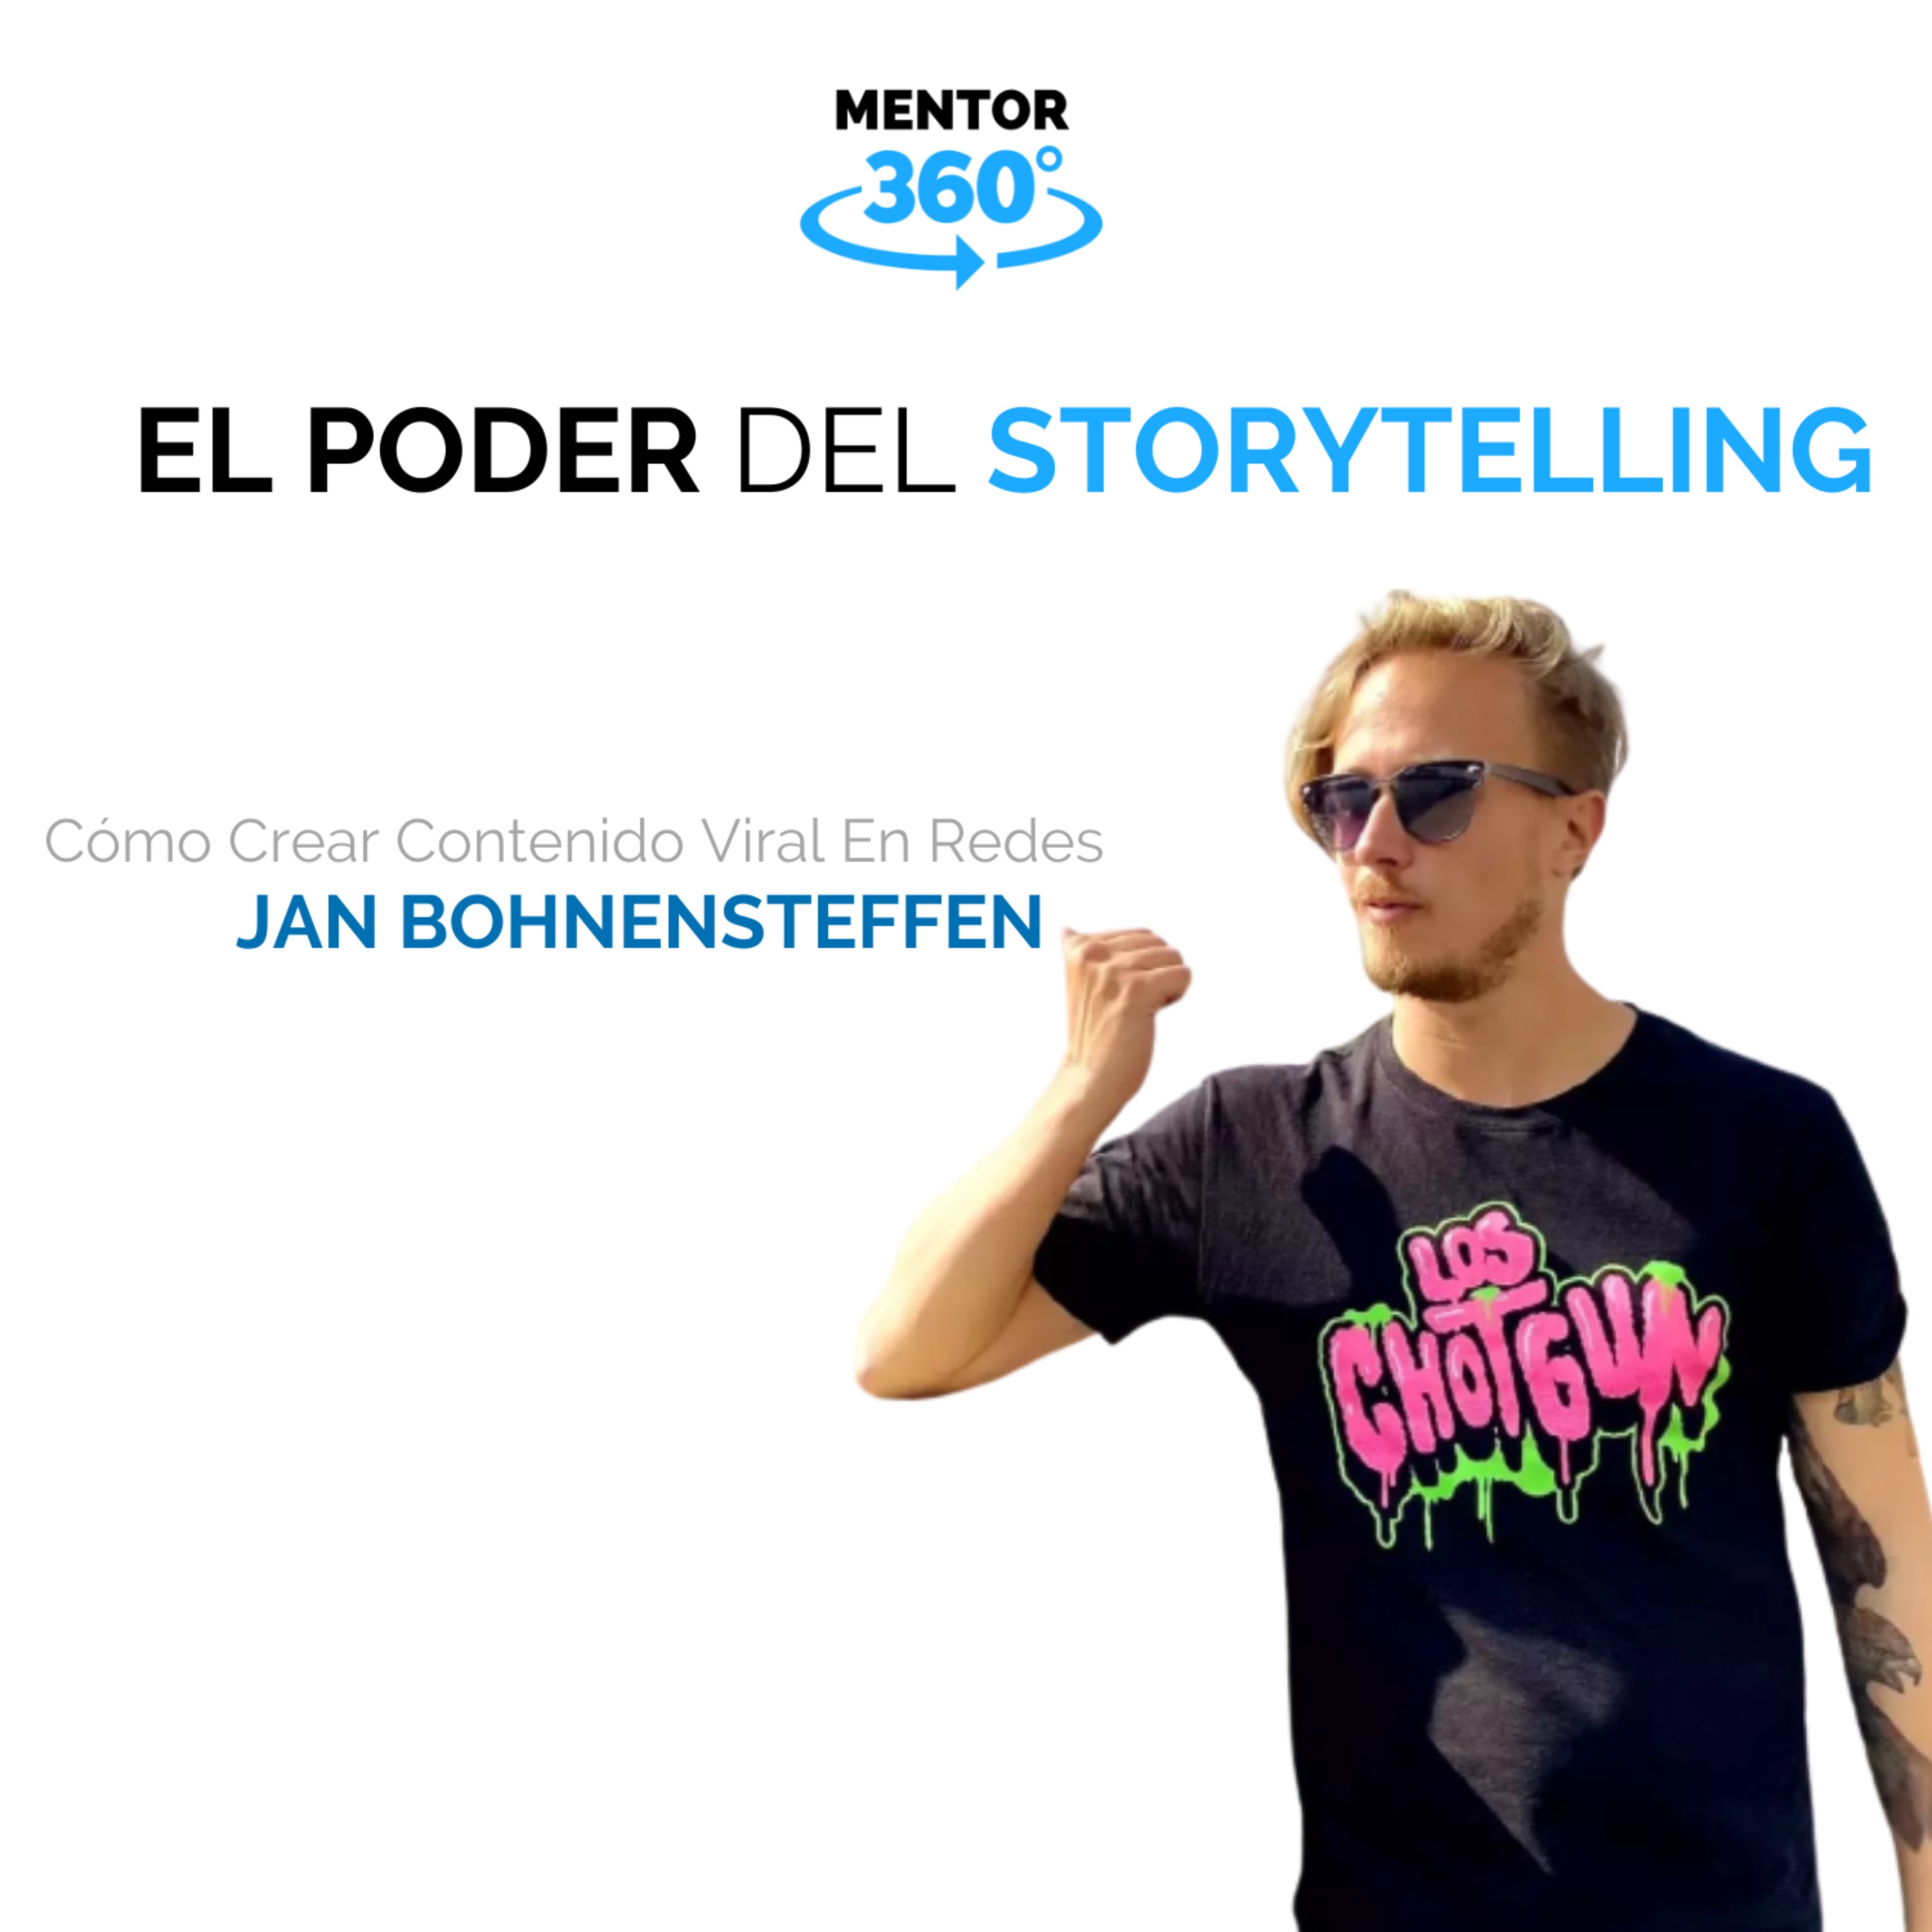 El Poder Del Storytelling - Cómo Crear Contenido Viral En Redes - Jan Bohnensteffen - MENTOR360